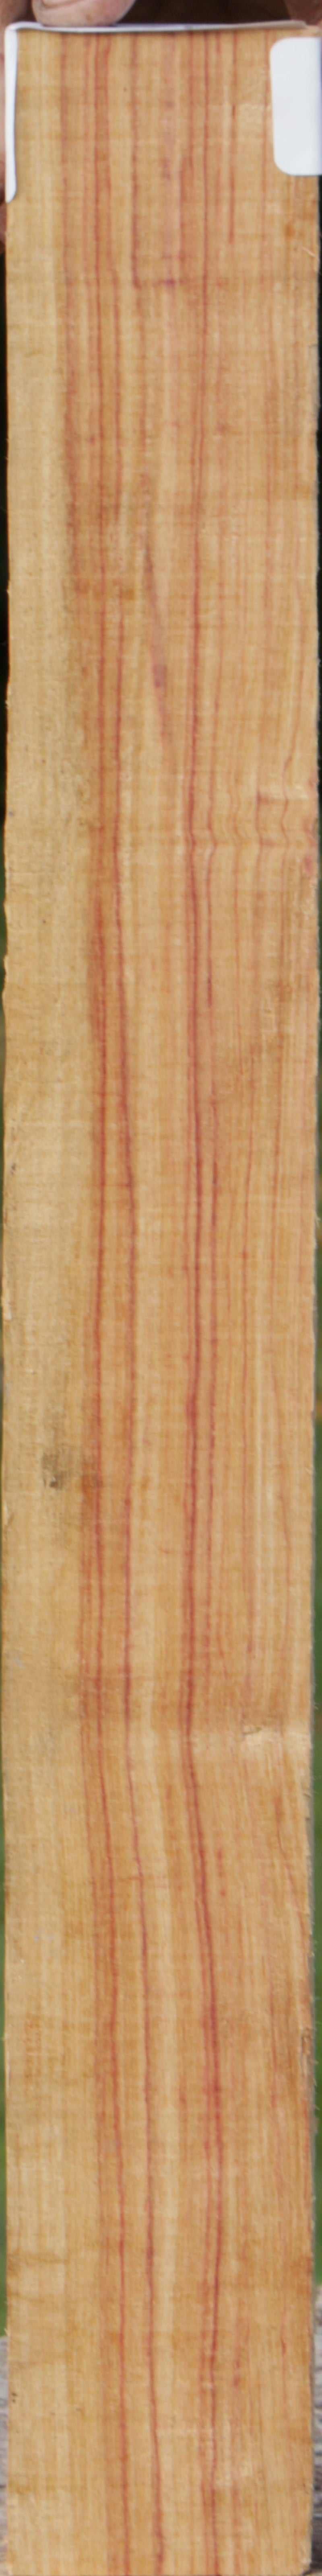 Tulipwood Lumber